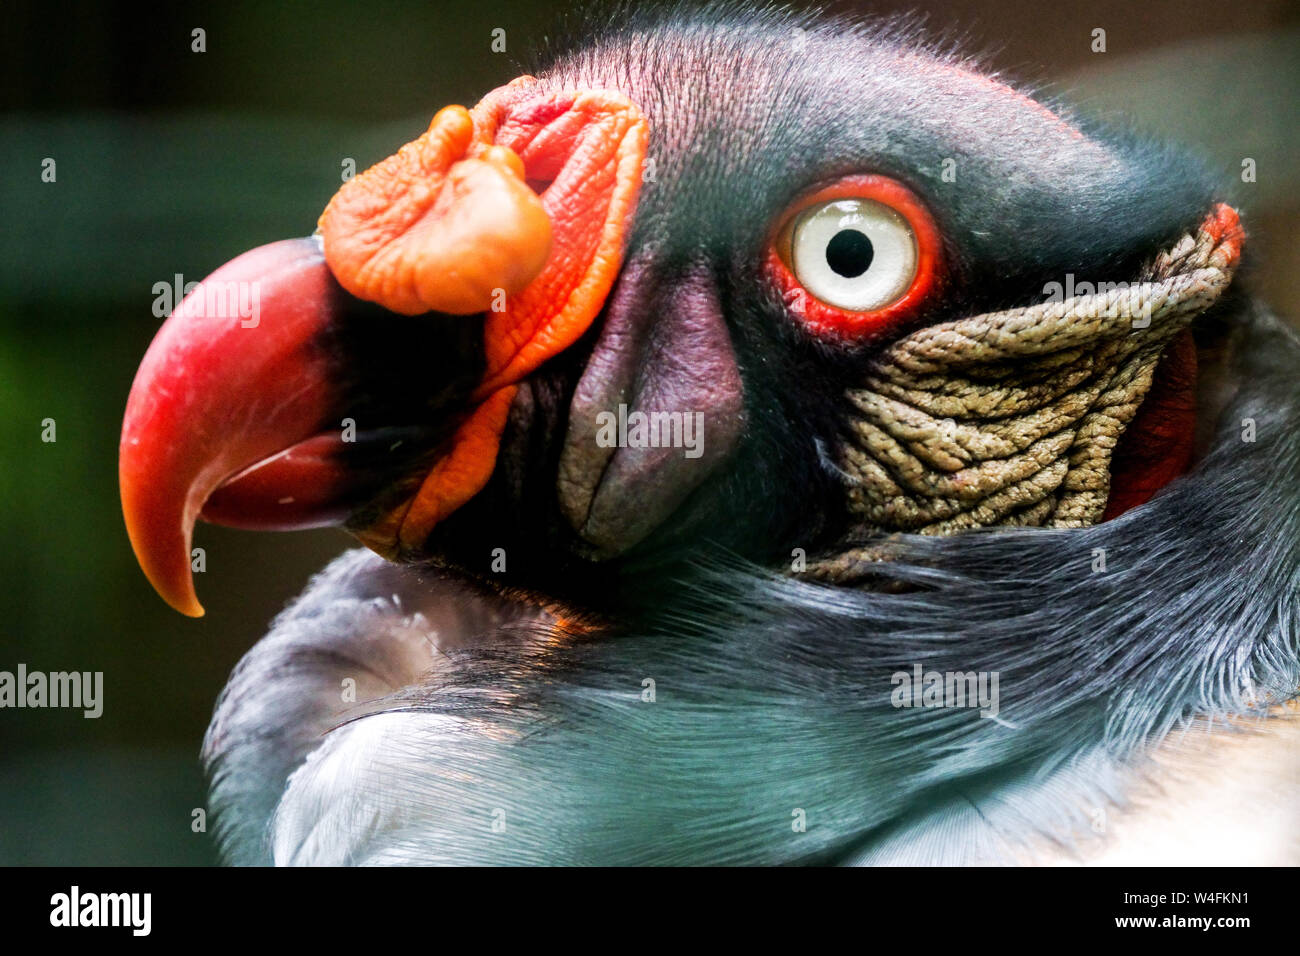 King vulture, Sarcoramphus papa, détail de tête avec bec Banque D'Images